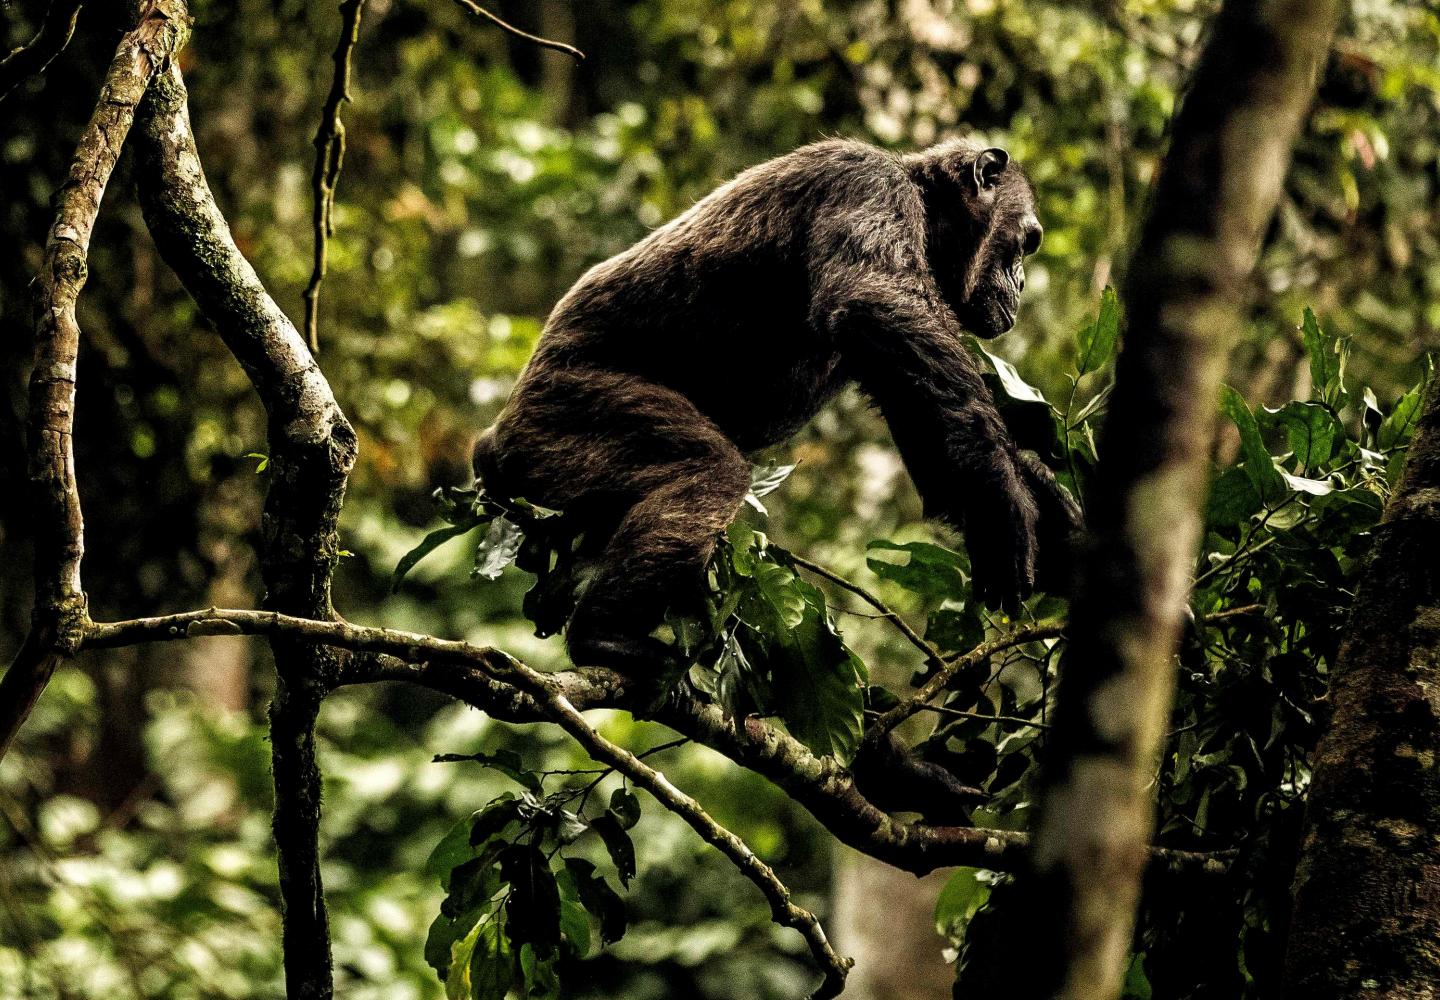 Chimpanzee (Nyungwe Forest Rwanda)